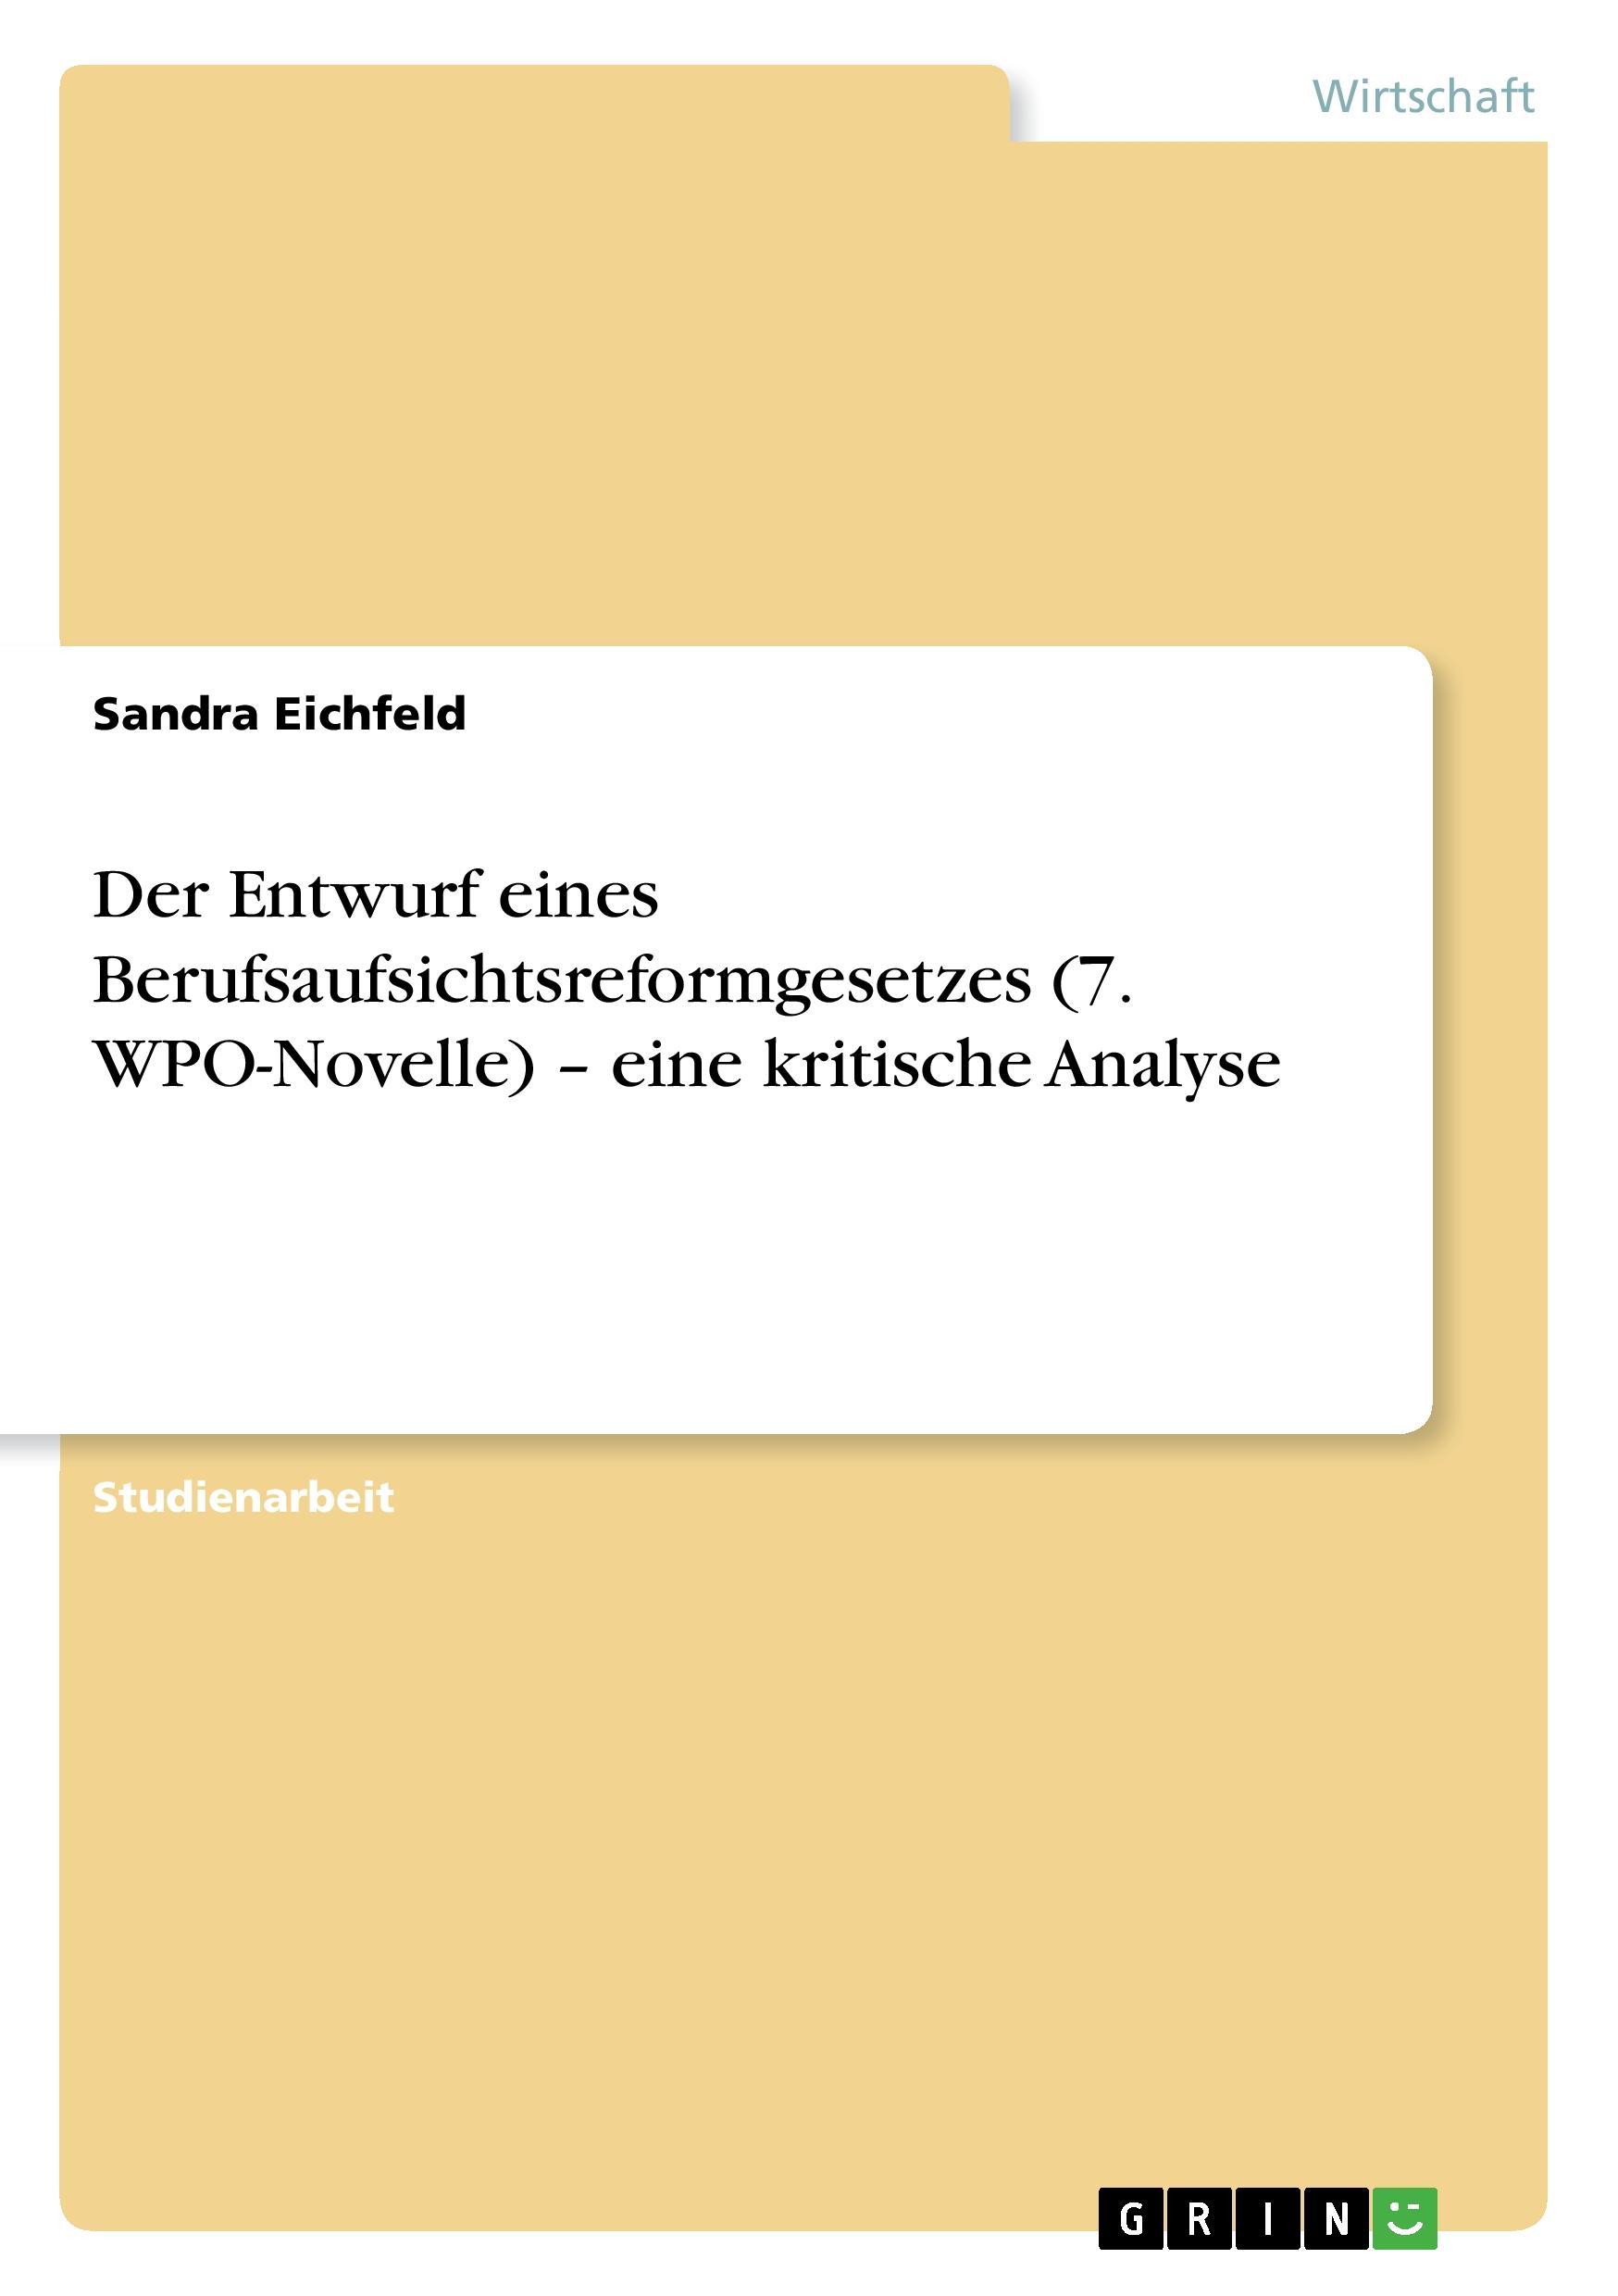 Der Entwurf eines Berufsaufsichtsreformgesetzes (7. WPO-Novelle) - eine kritische Analyse - Eichfeld, Sandra